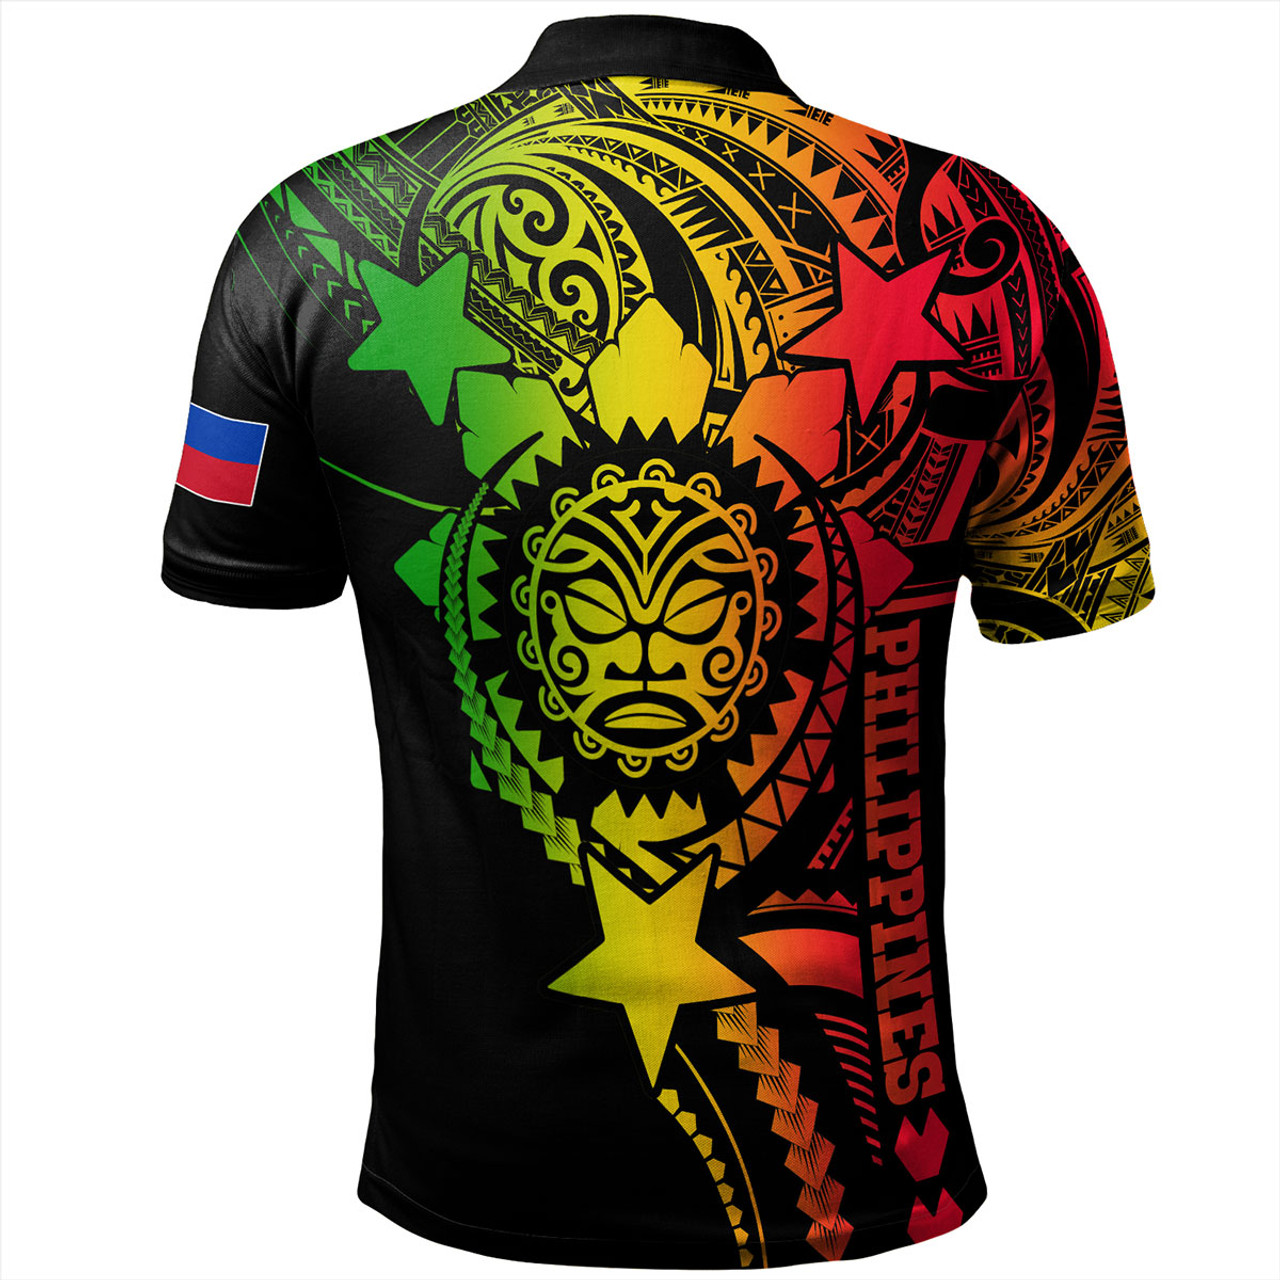 Philippines Filipinos Polo Shirt - Proud To Be Filipino Tribal Sun Batok Reggae Style